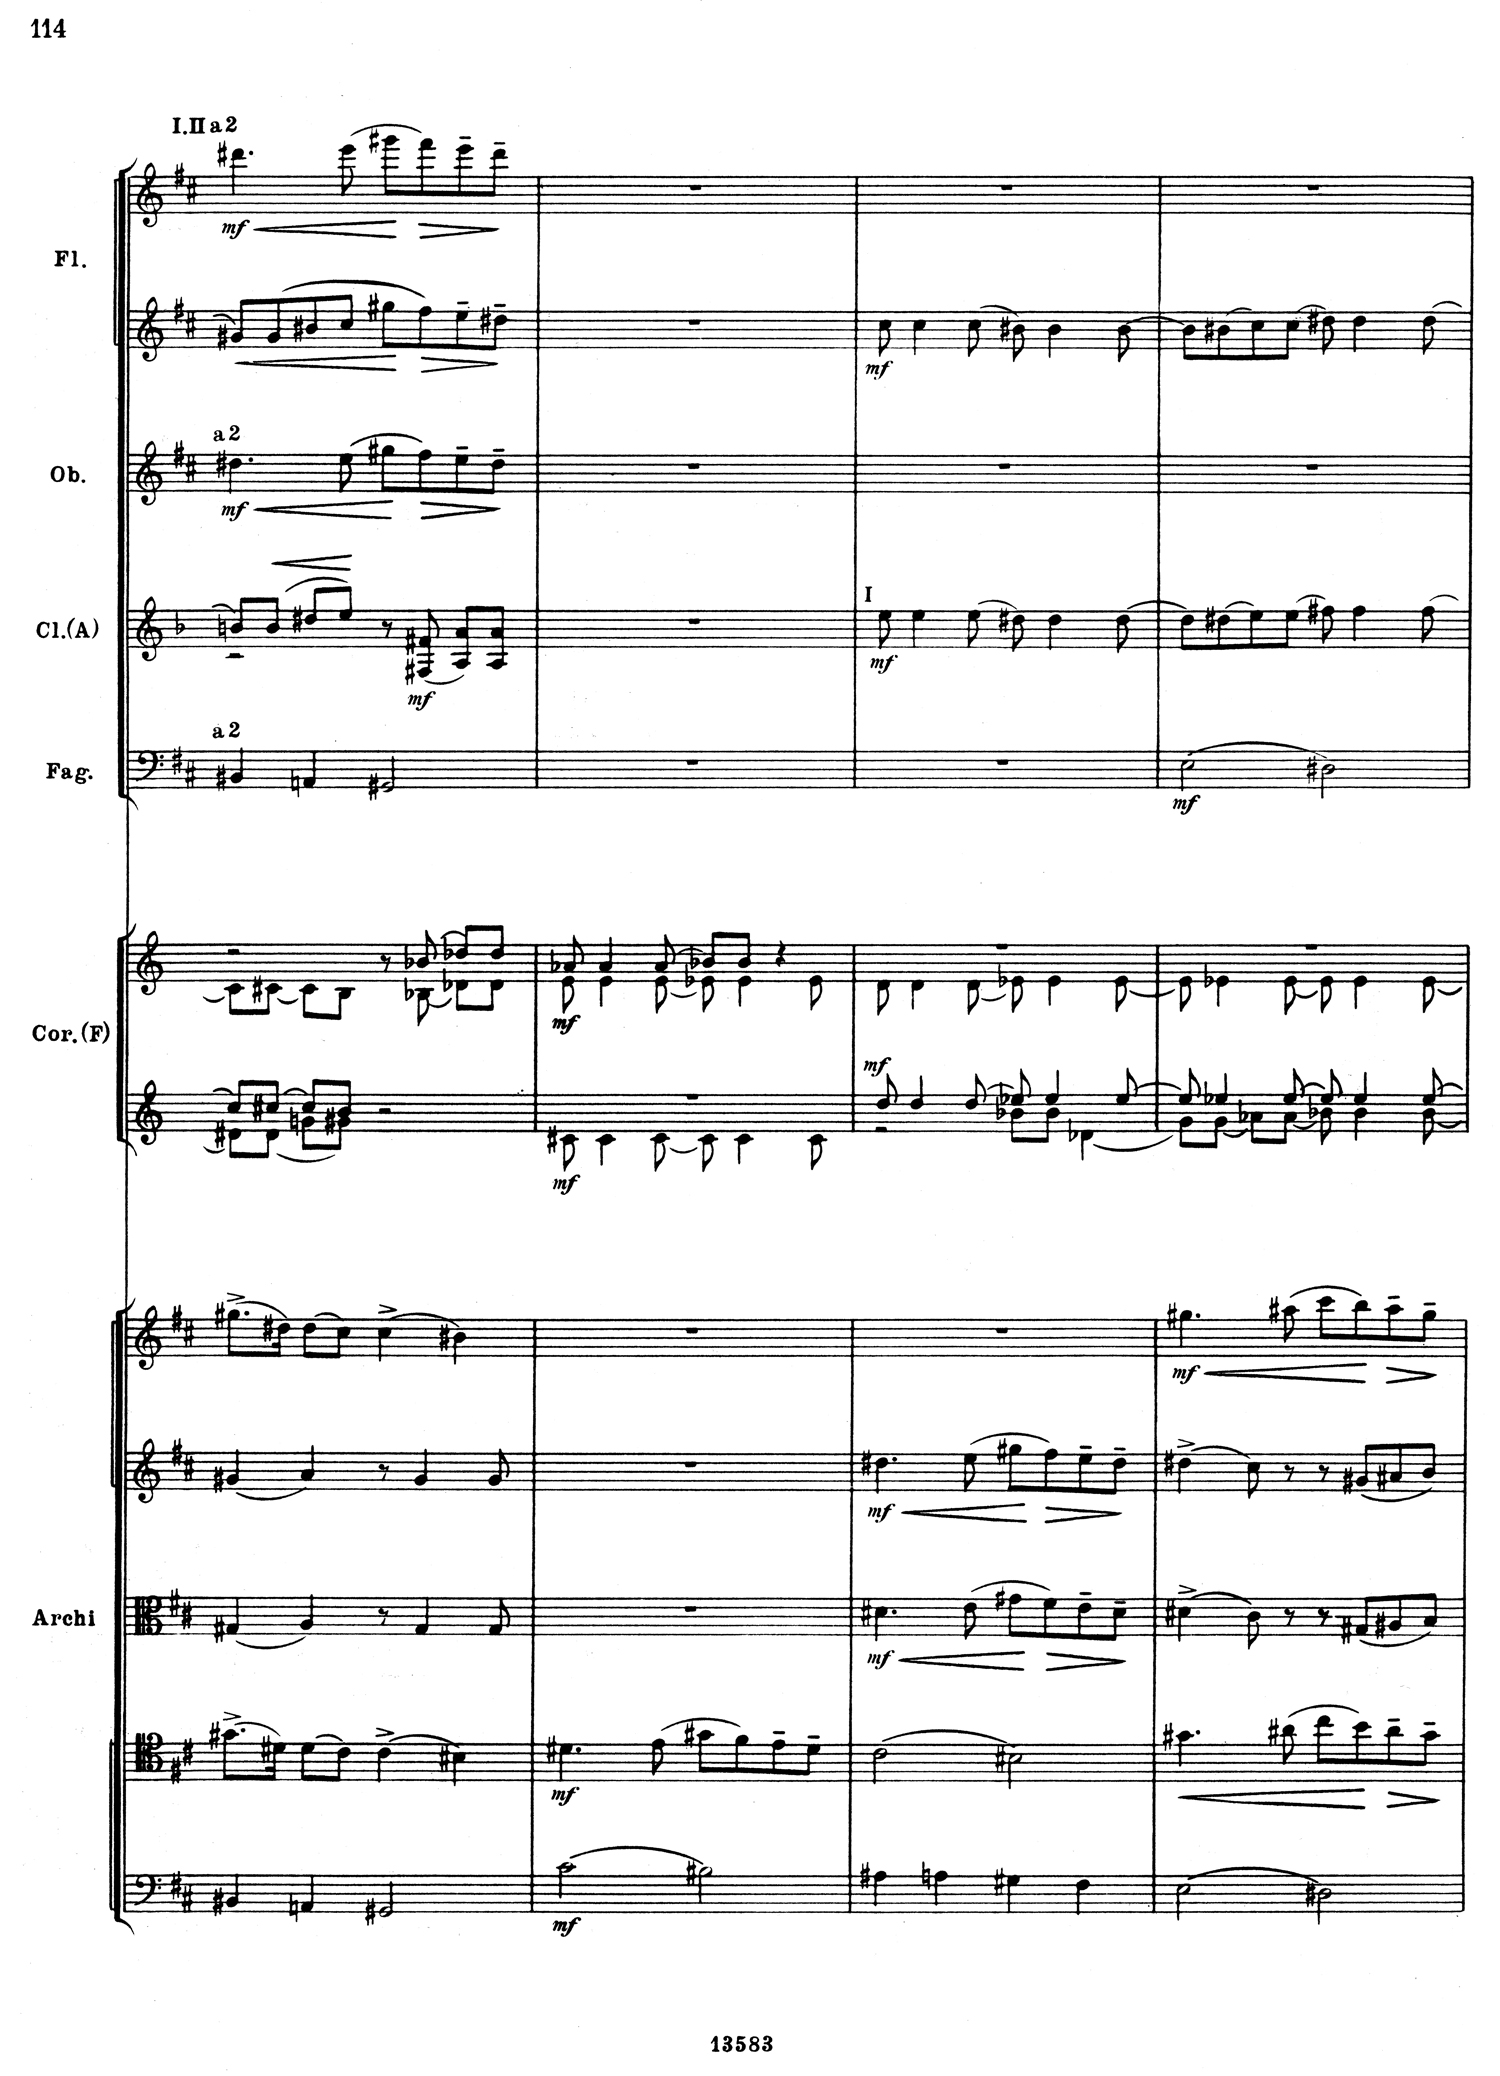 Tchaikovsky 5 Mvt 2 Score 2.jpg